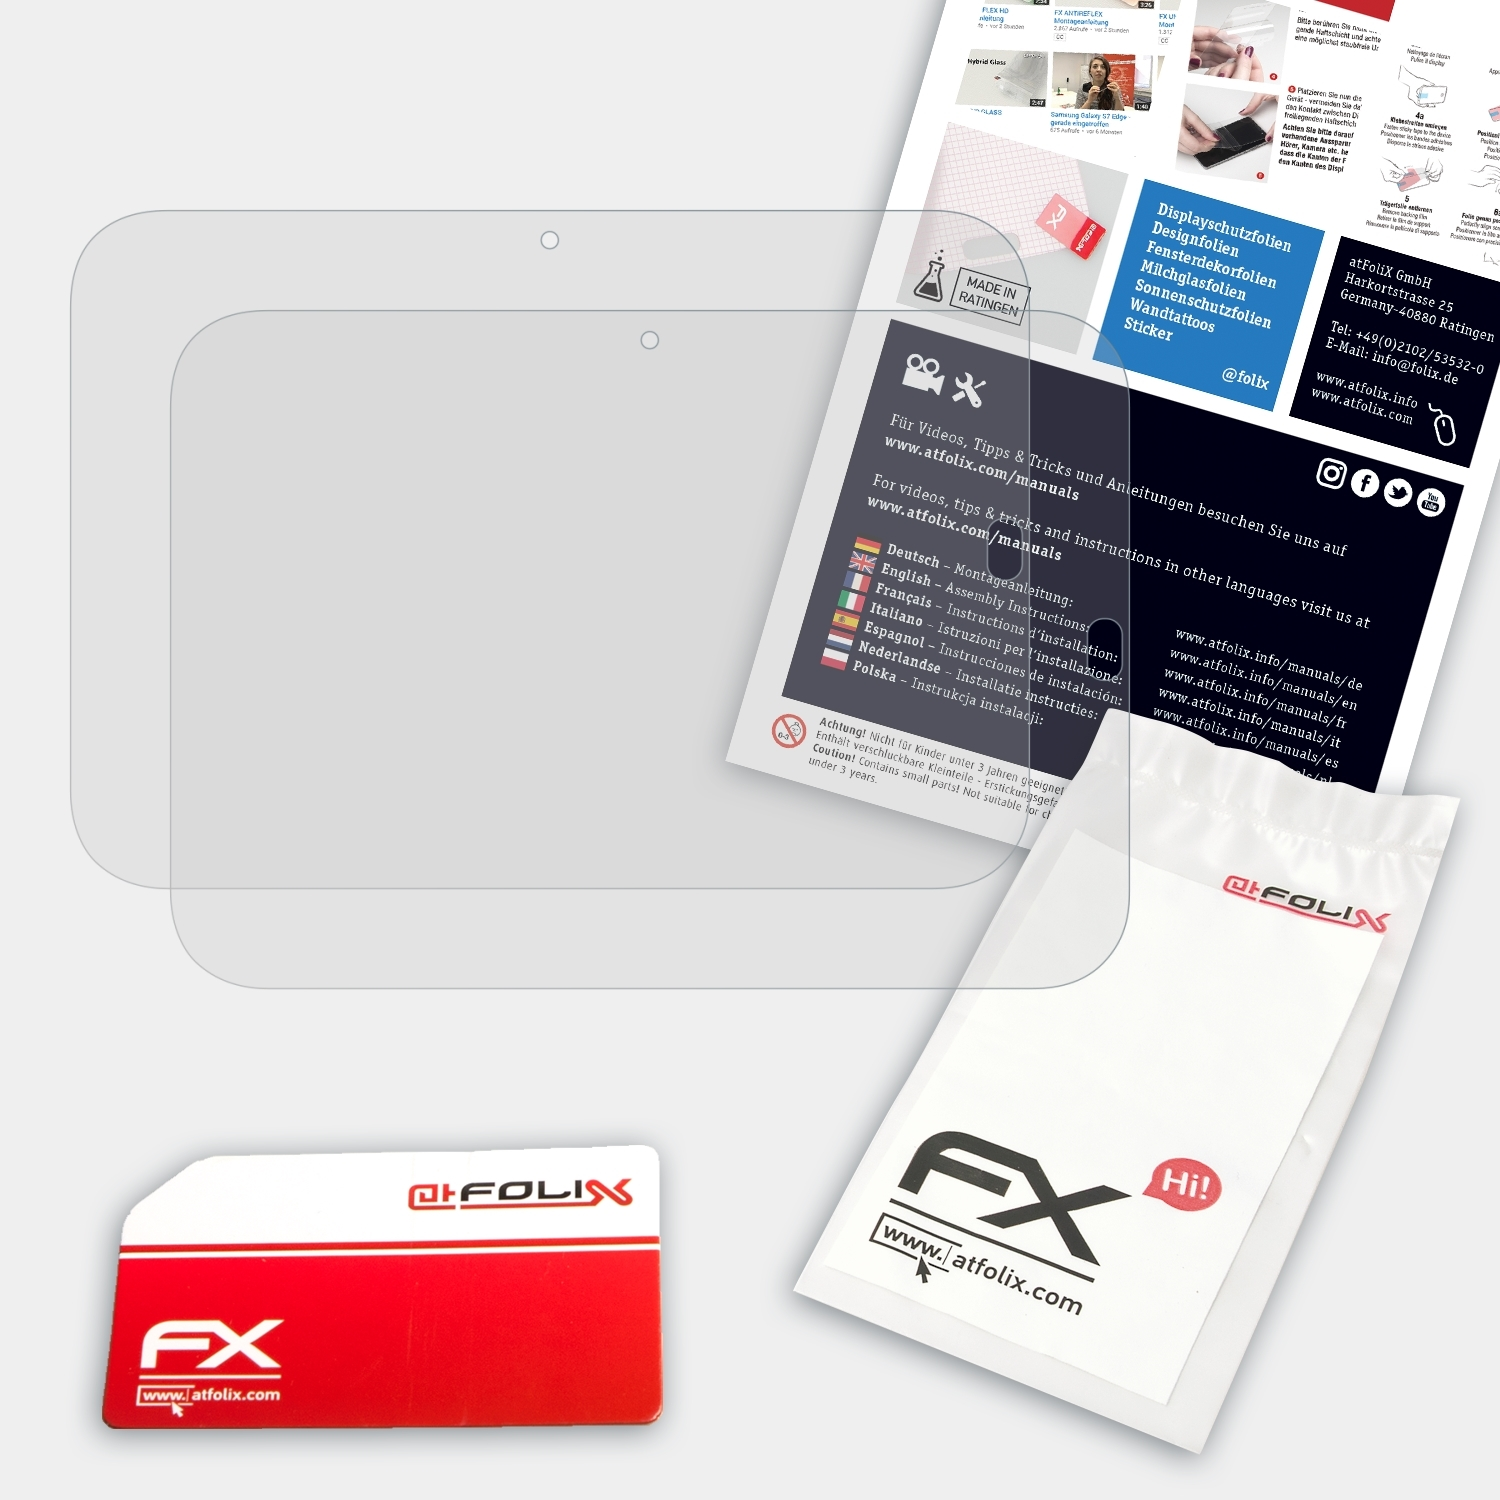 Medion FX-Antireflex Displayschutz(für P9516 ATFOLIX LIFETAB (MD99100)) 2x